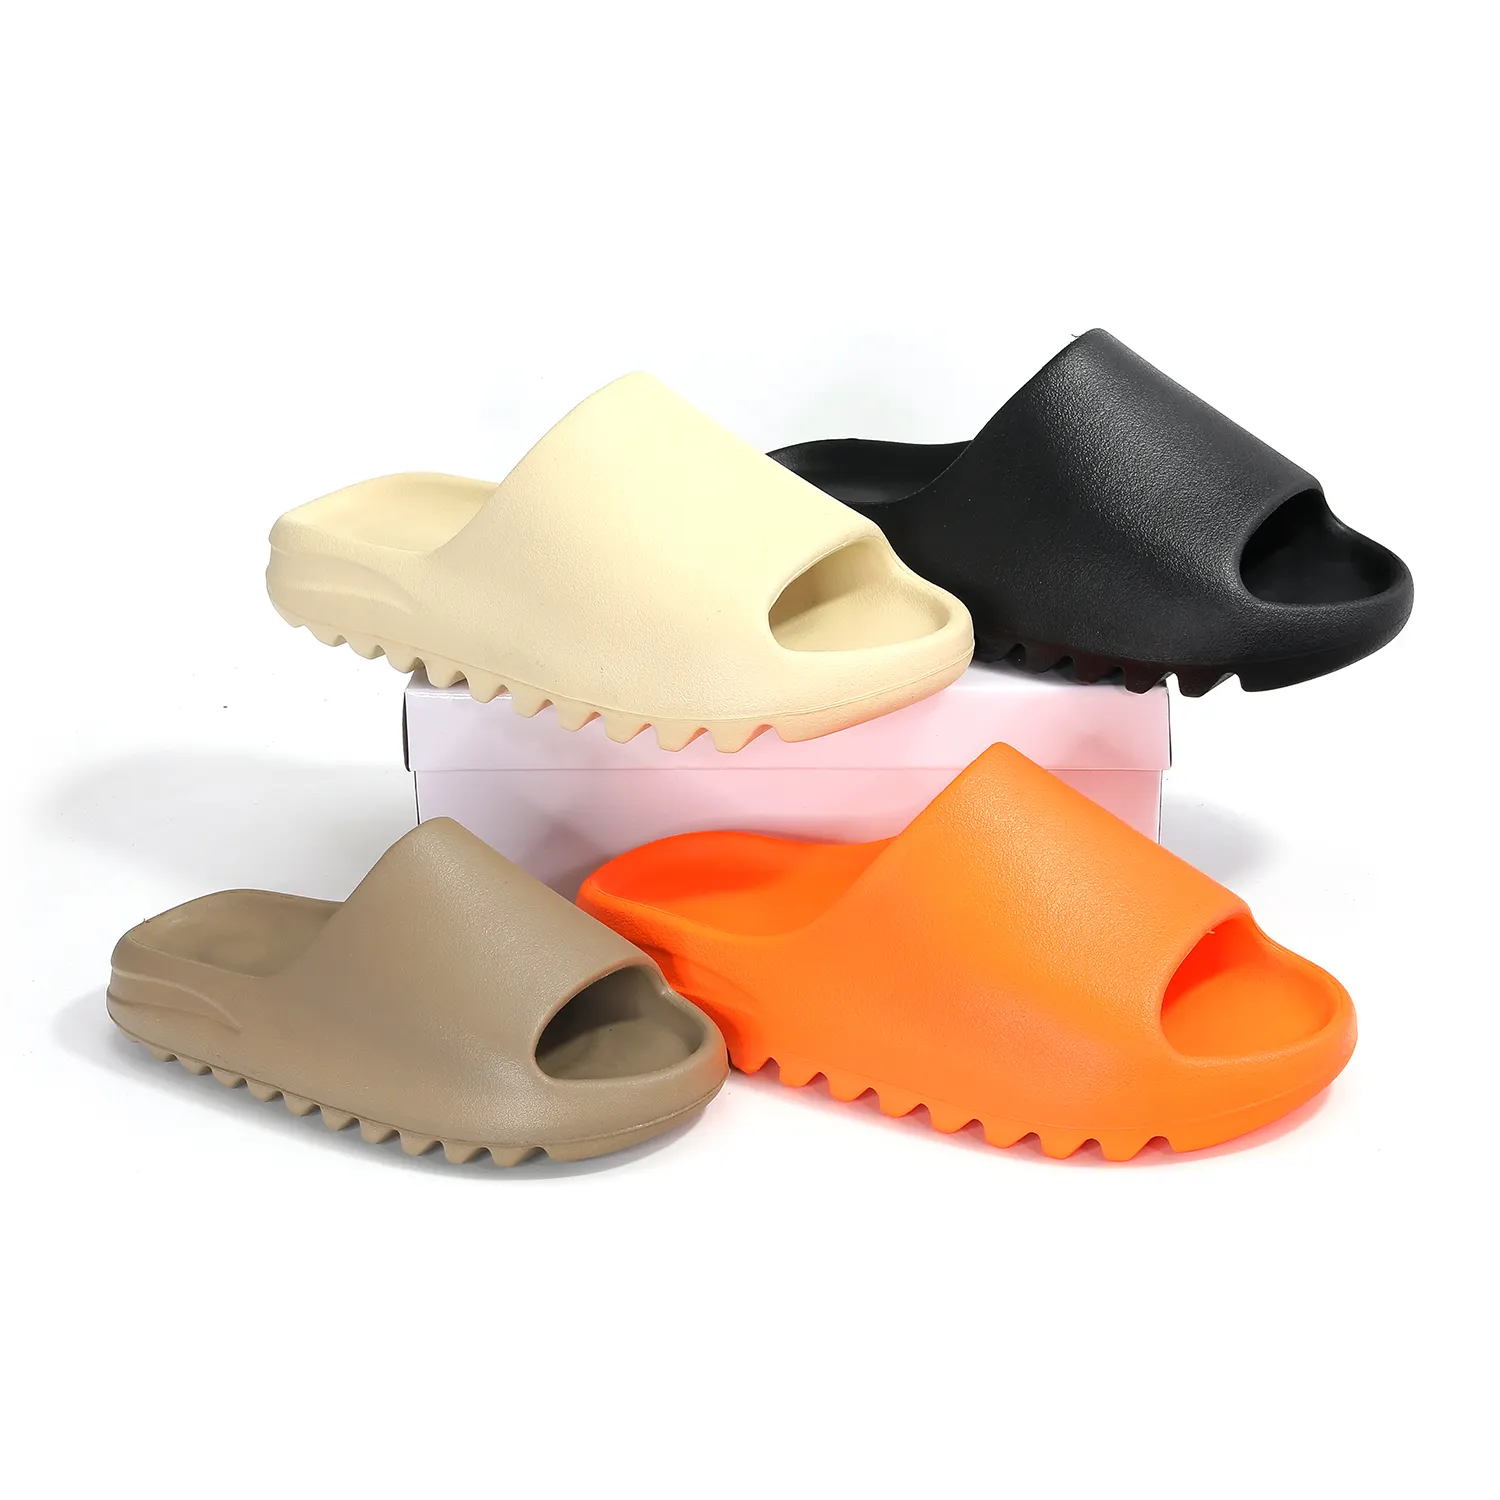 비치 풀 Zapatilla 오픈 토 EVA 믹스 고무 폼 원래 구름 슬라이드 신발 다채로운 신발 남여 공용 진정 슬라이드 슬리퍼